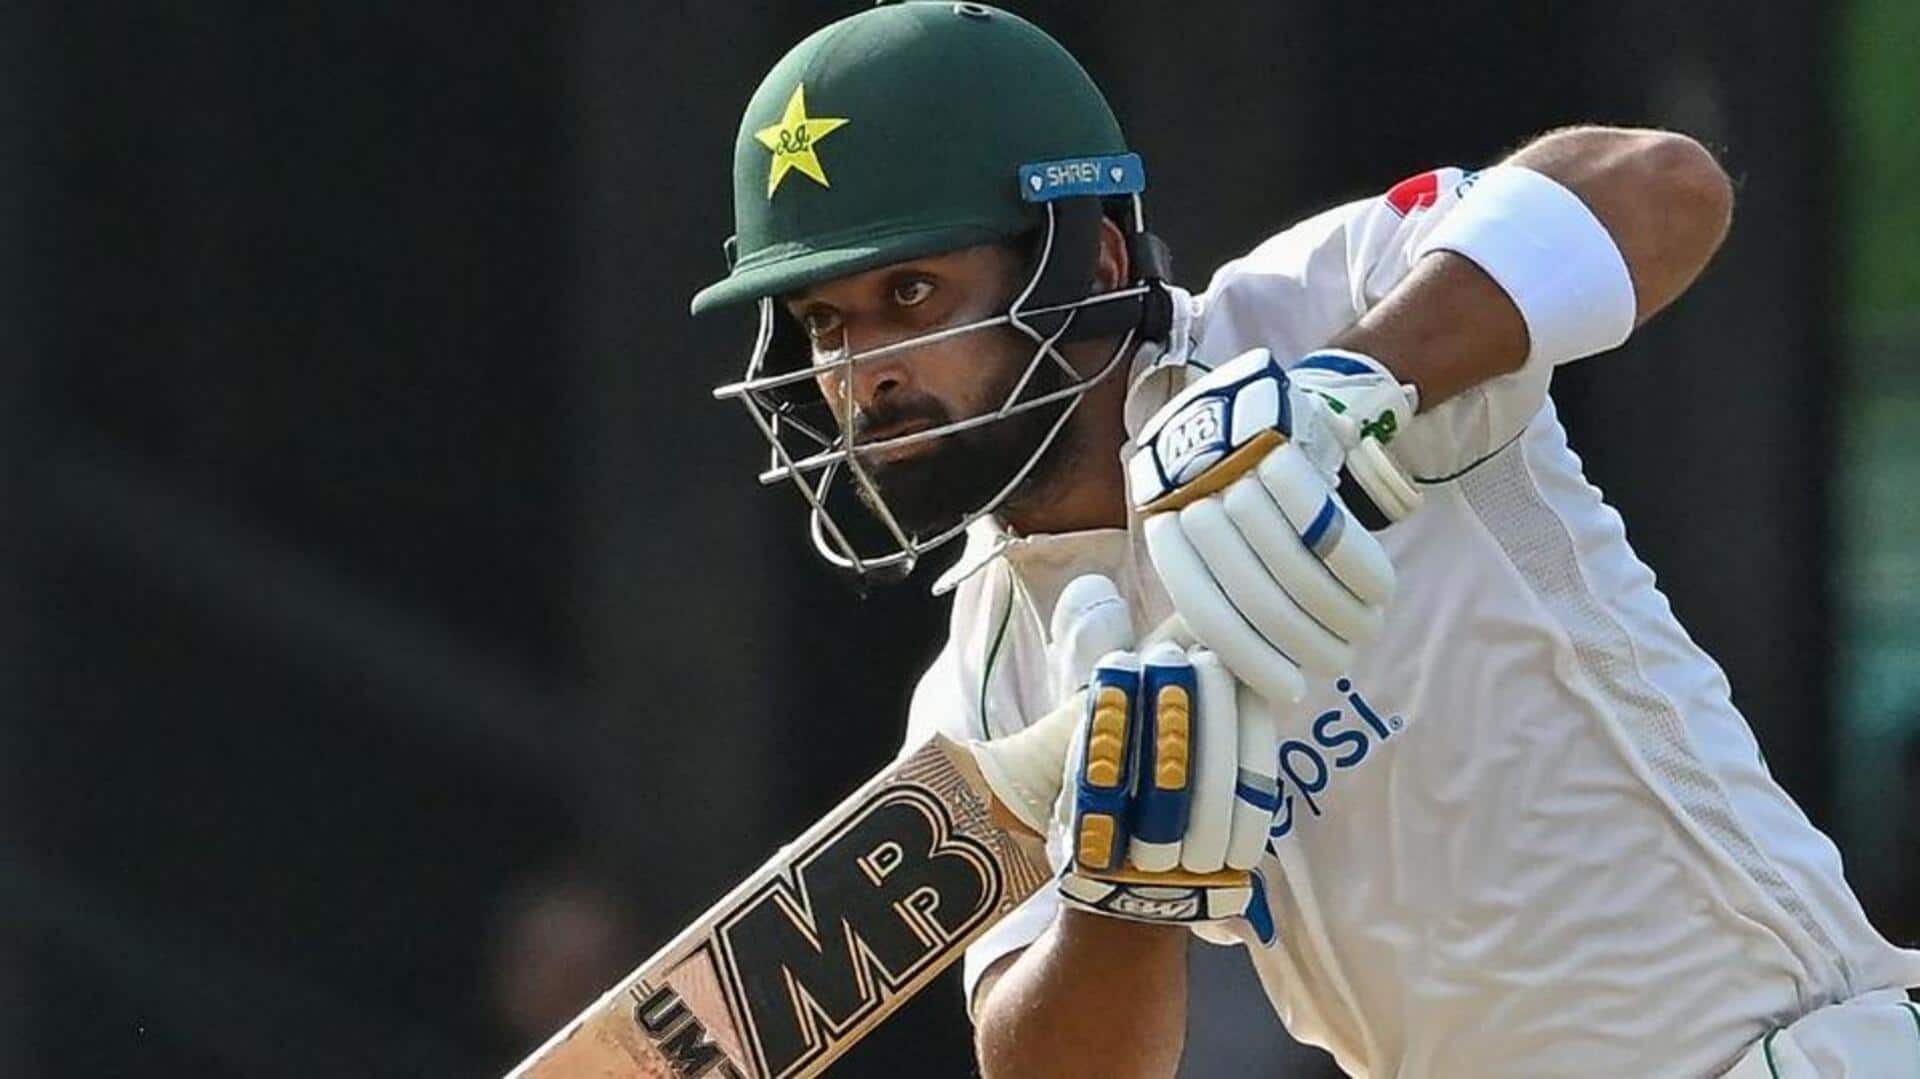 श्रीलंका बनाम पाकिस्तान: अब्दुल्लाह शफीक ने जमाया टेस्ट करियर का चौथा टेस्ट शतक, जानिए उनके आंकड़े 